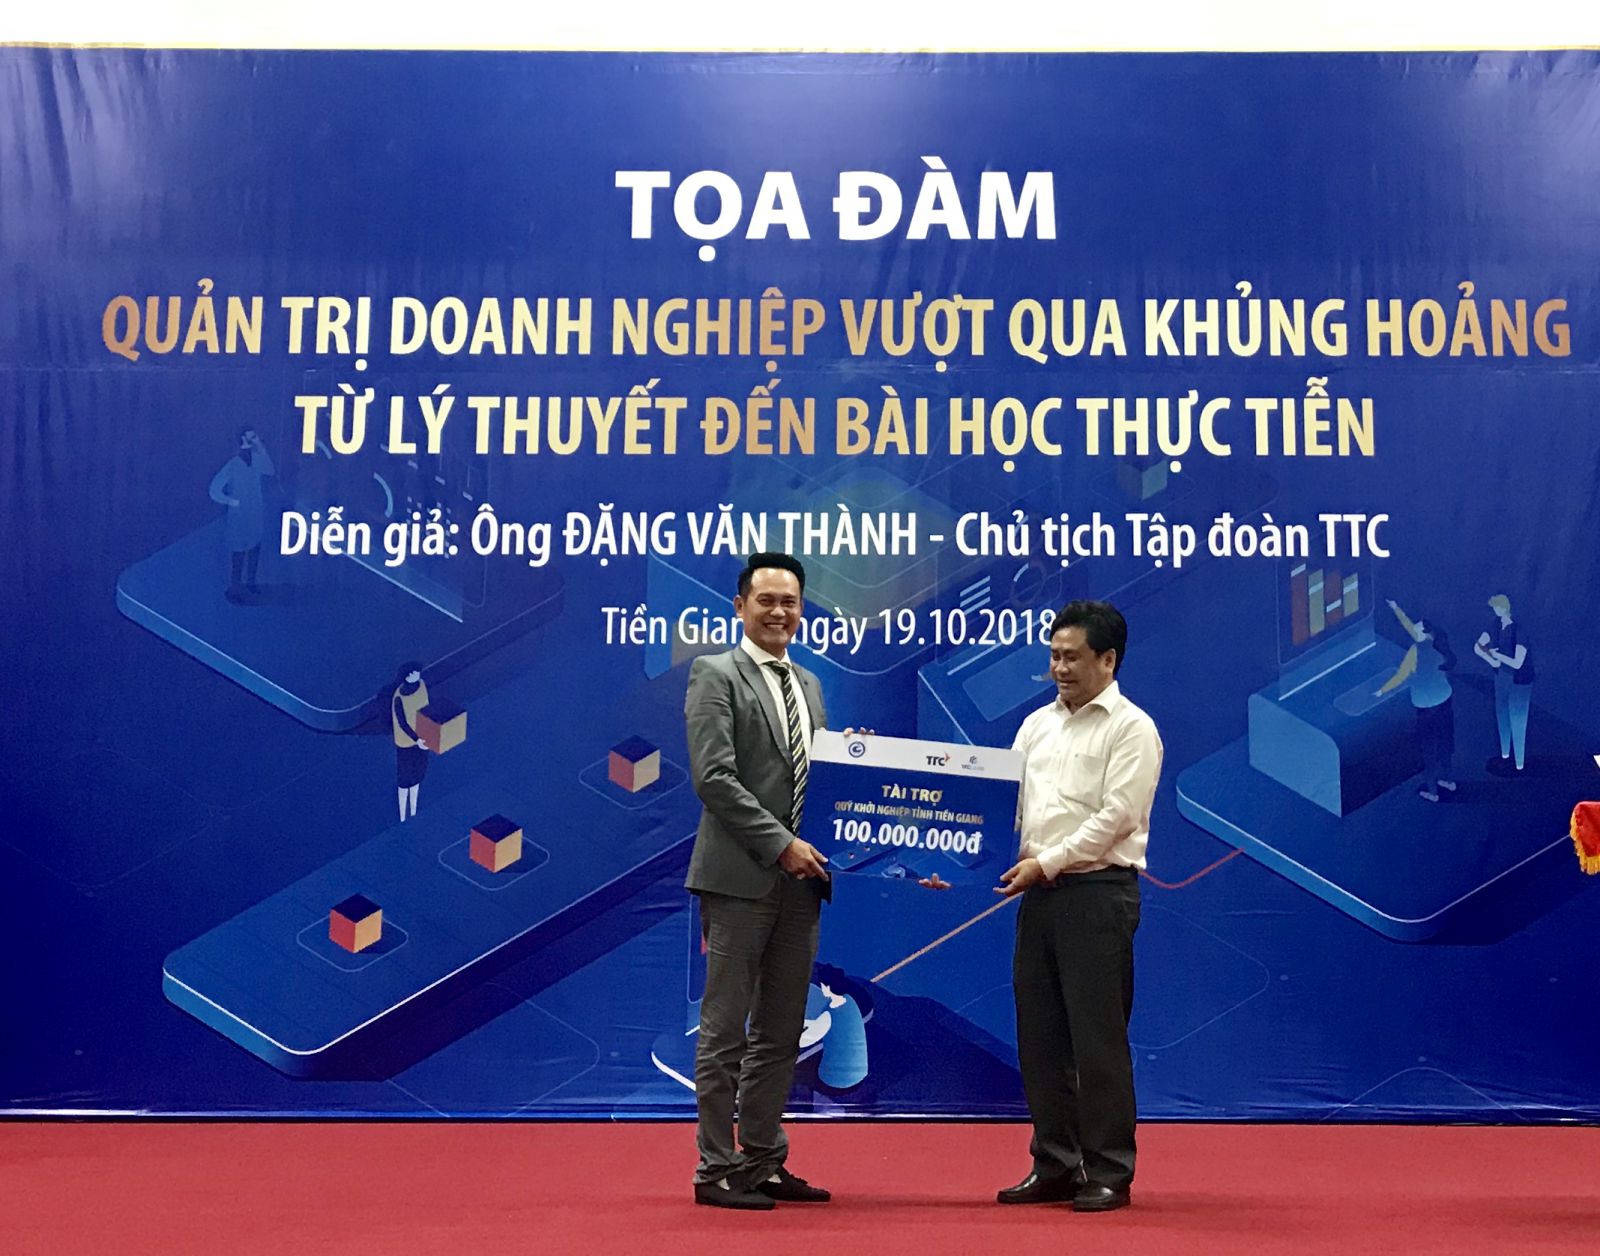 ông Đặng Hồng Anh, Phó Chủ tịch TTC trao 100 triệu đồng cho Quỹ hỗ trợ khởi nghiệp tỉnh Tiền Giang